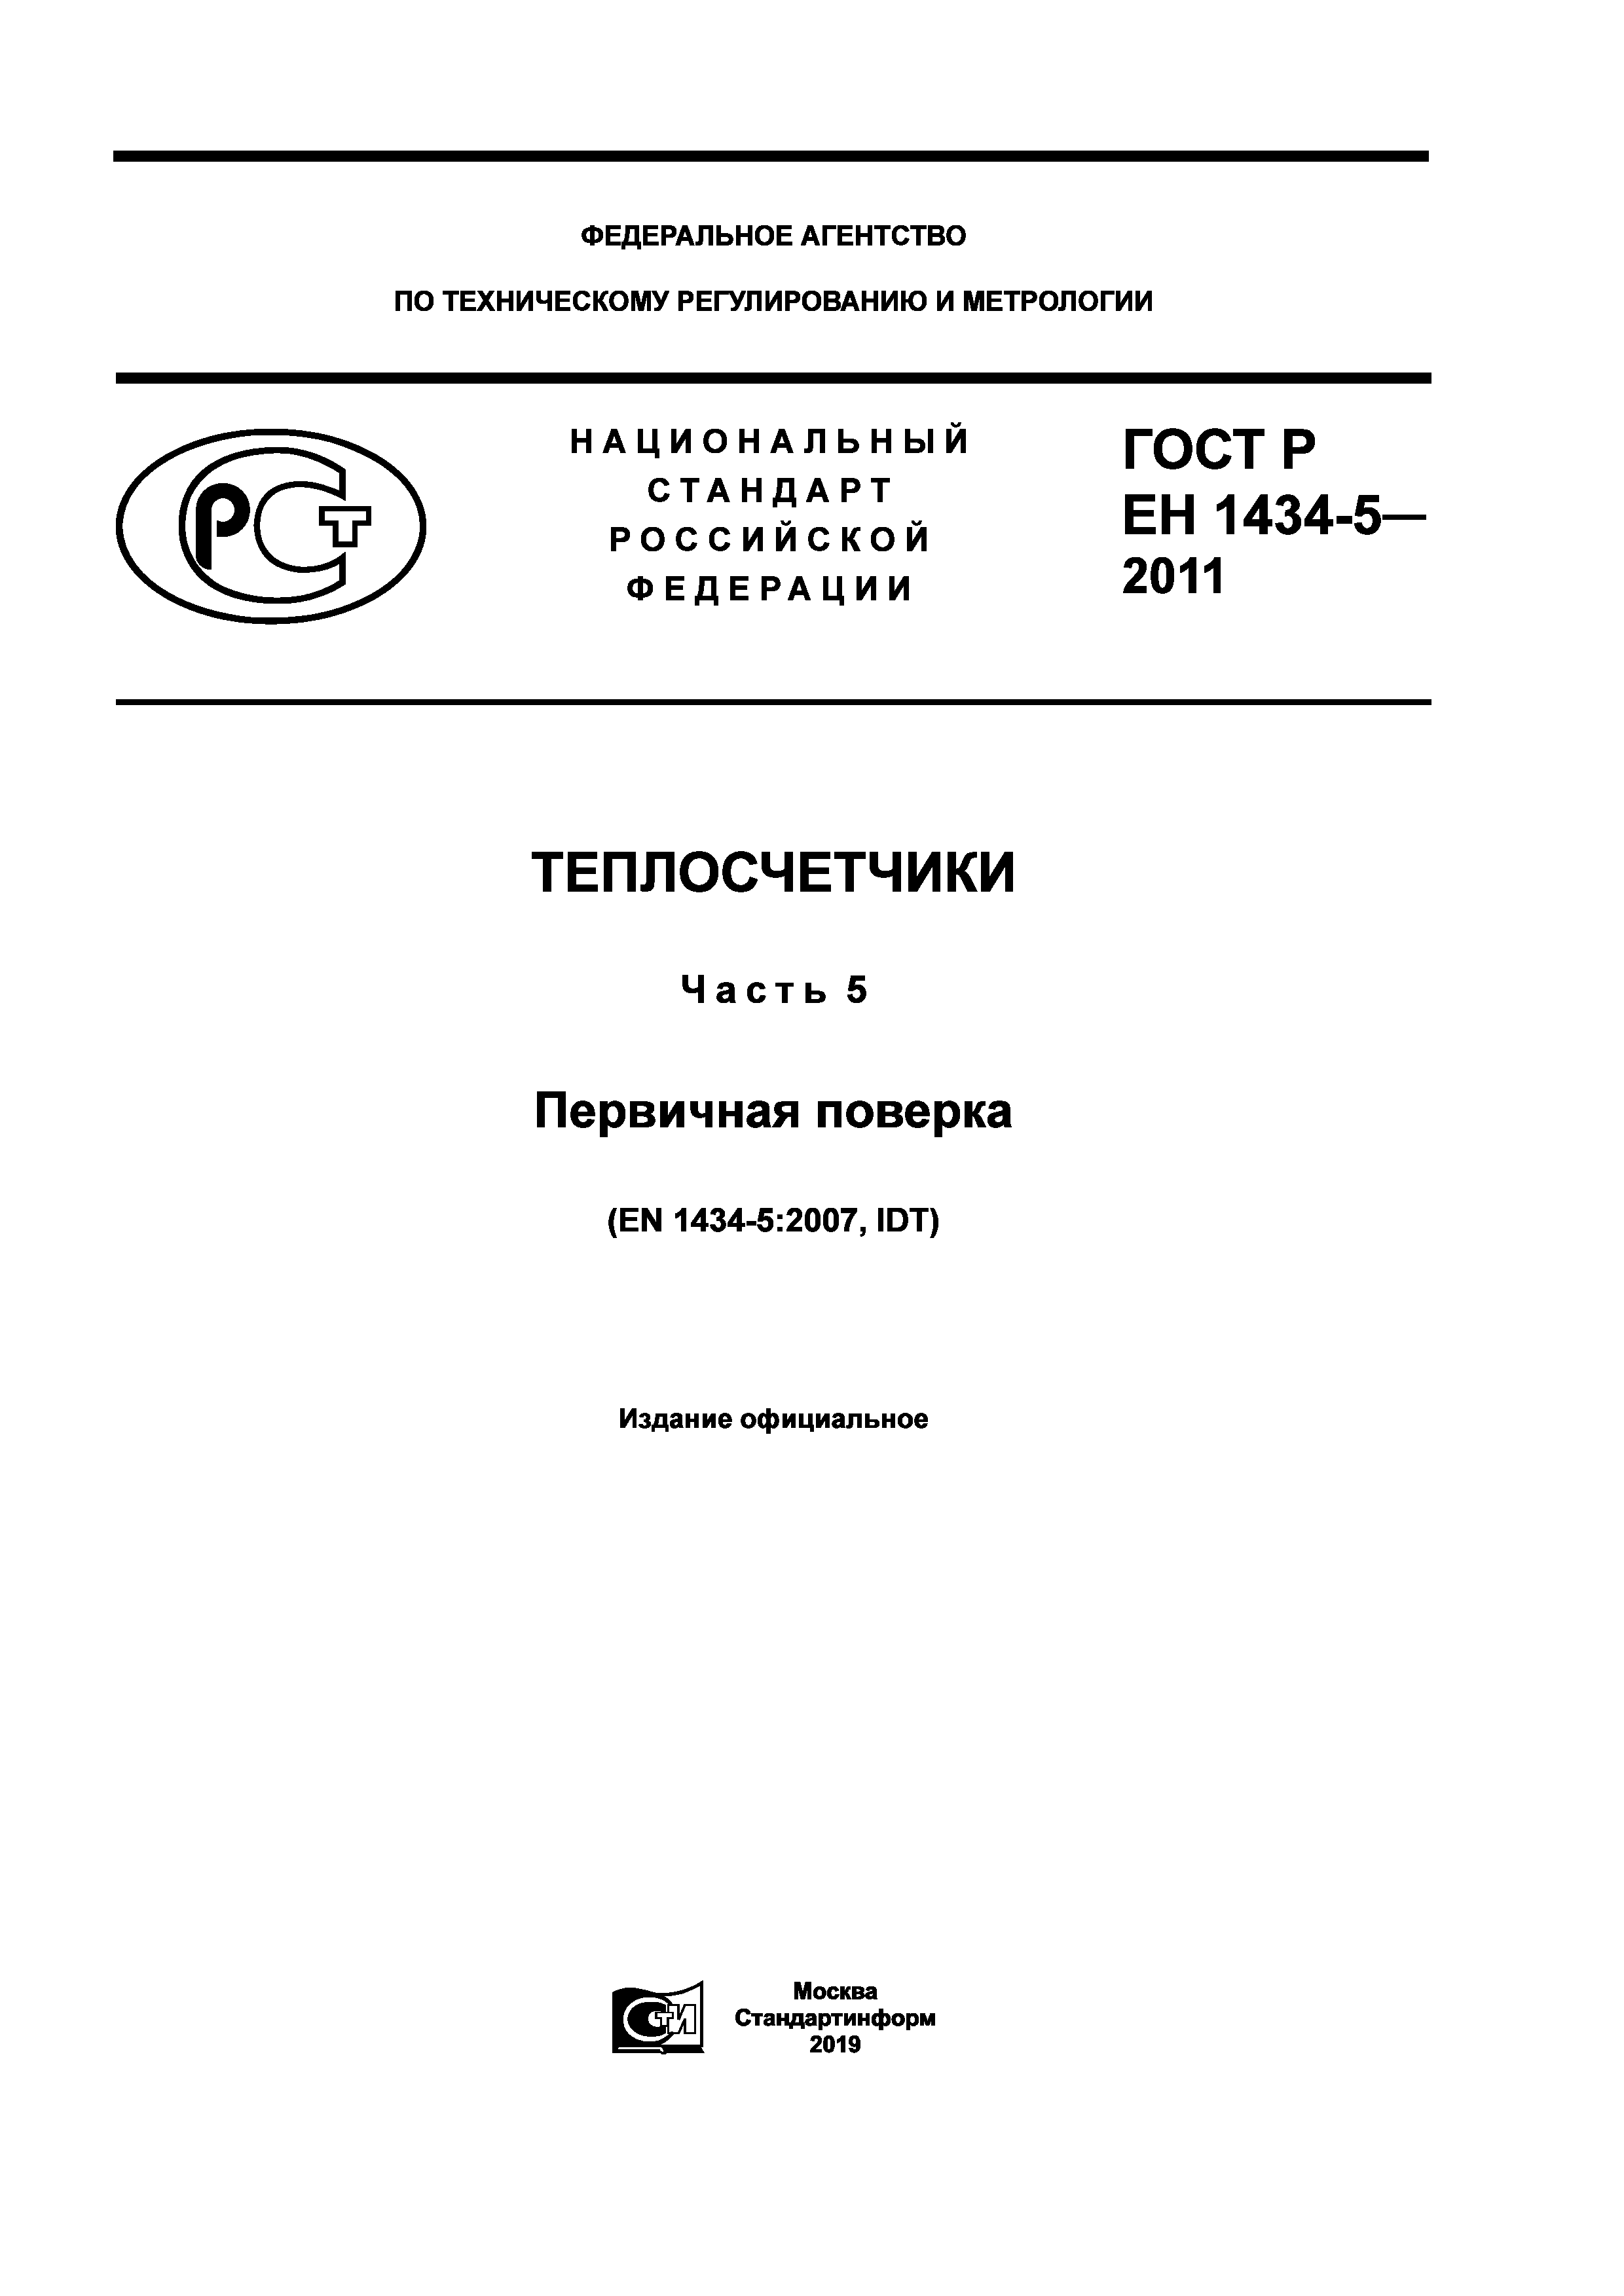 ГОСТ Р ЕН 1434-5-2011